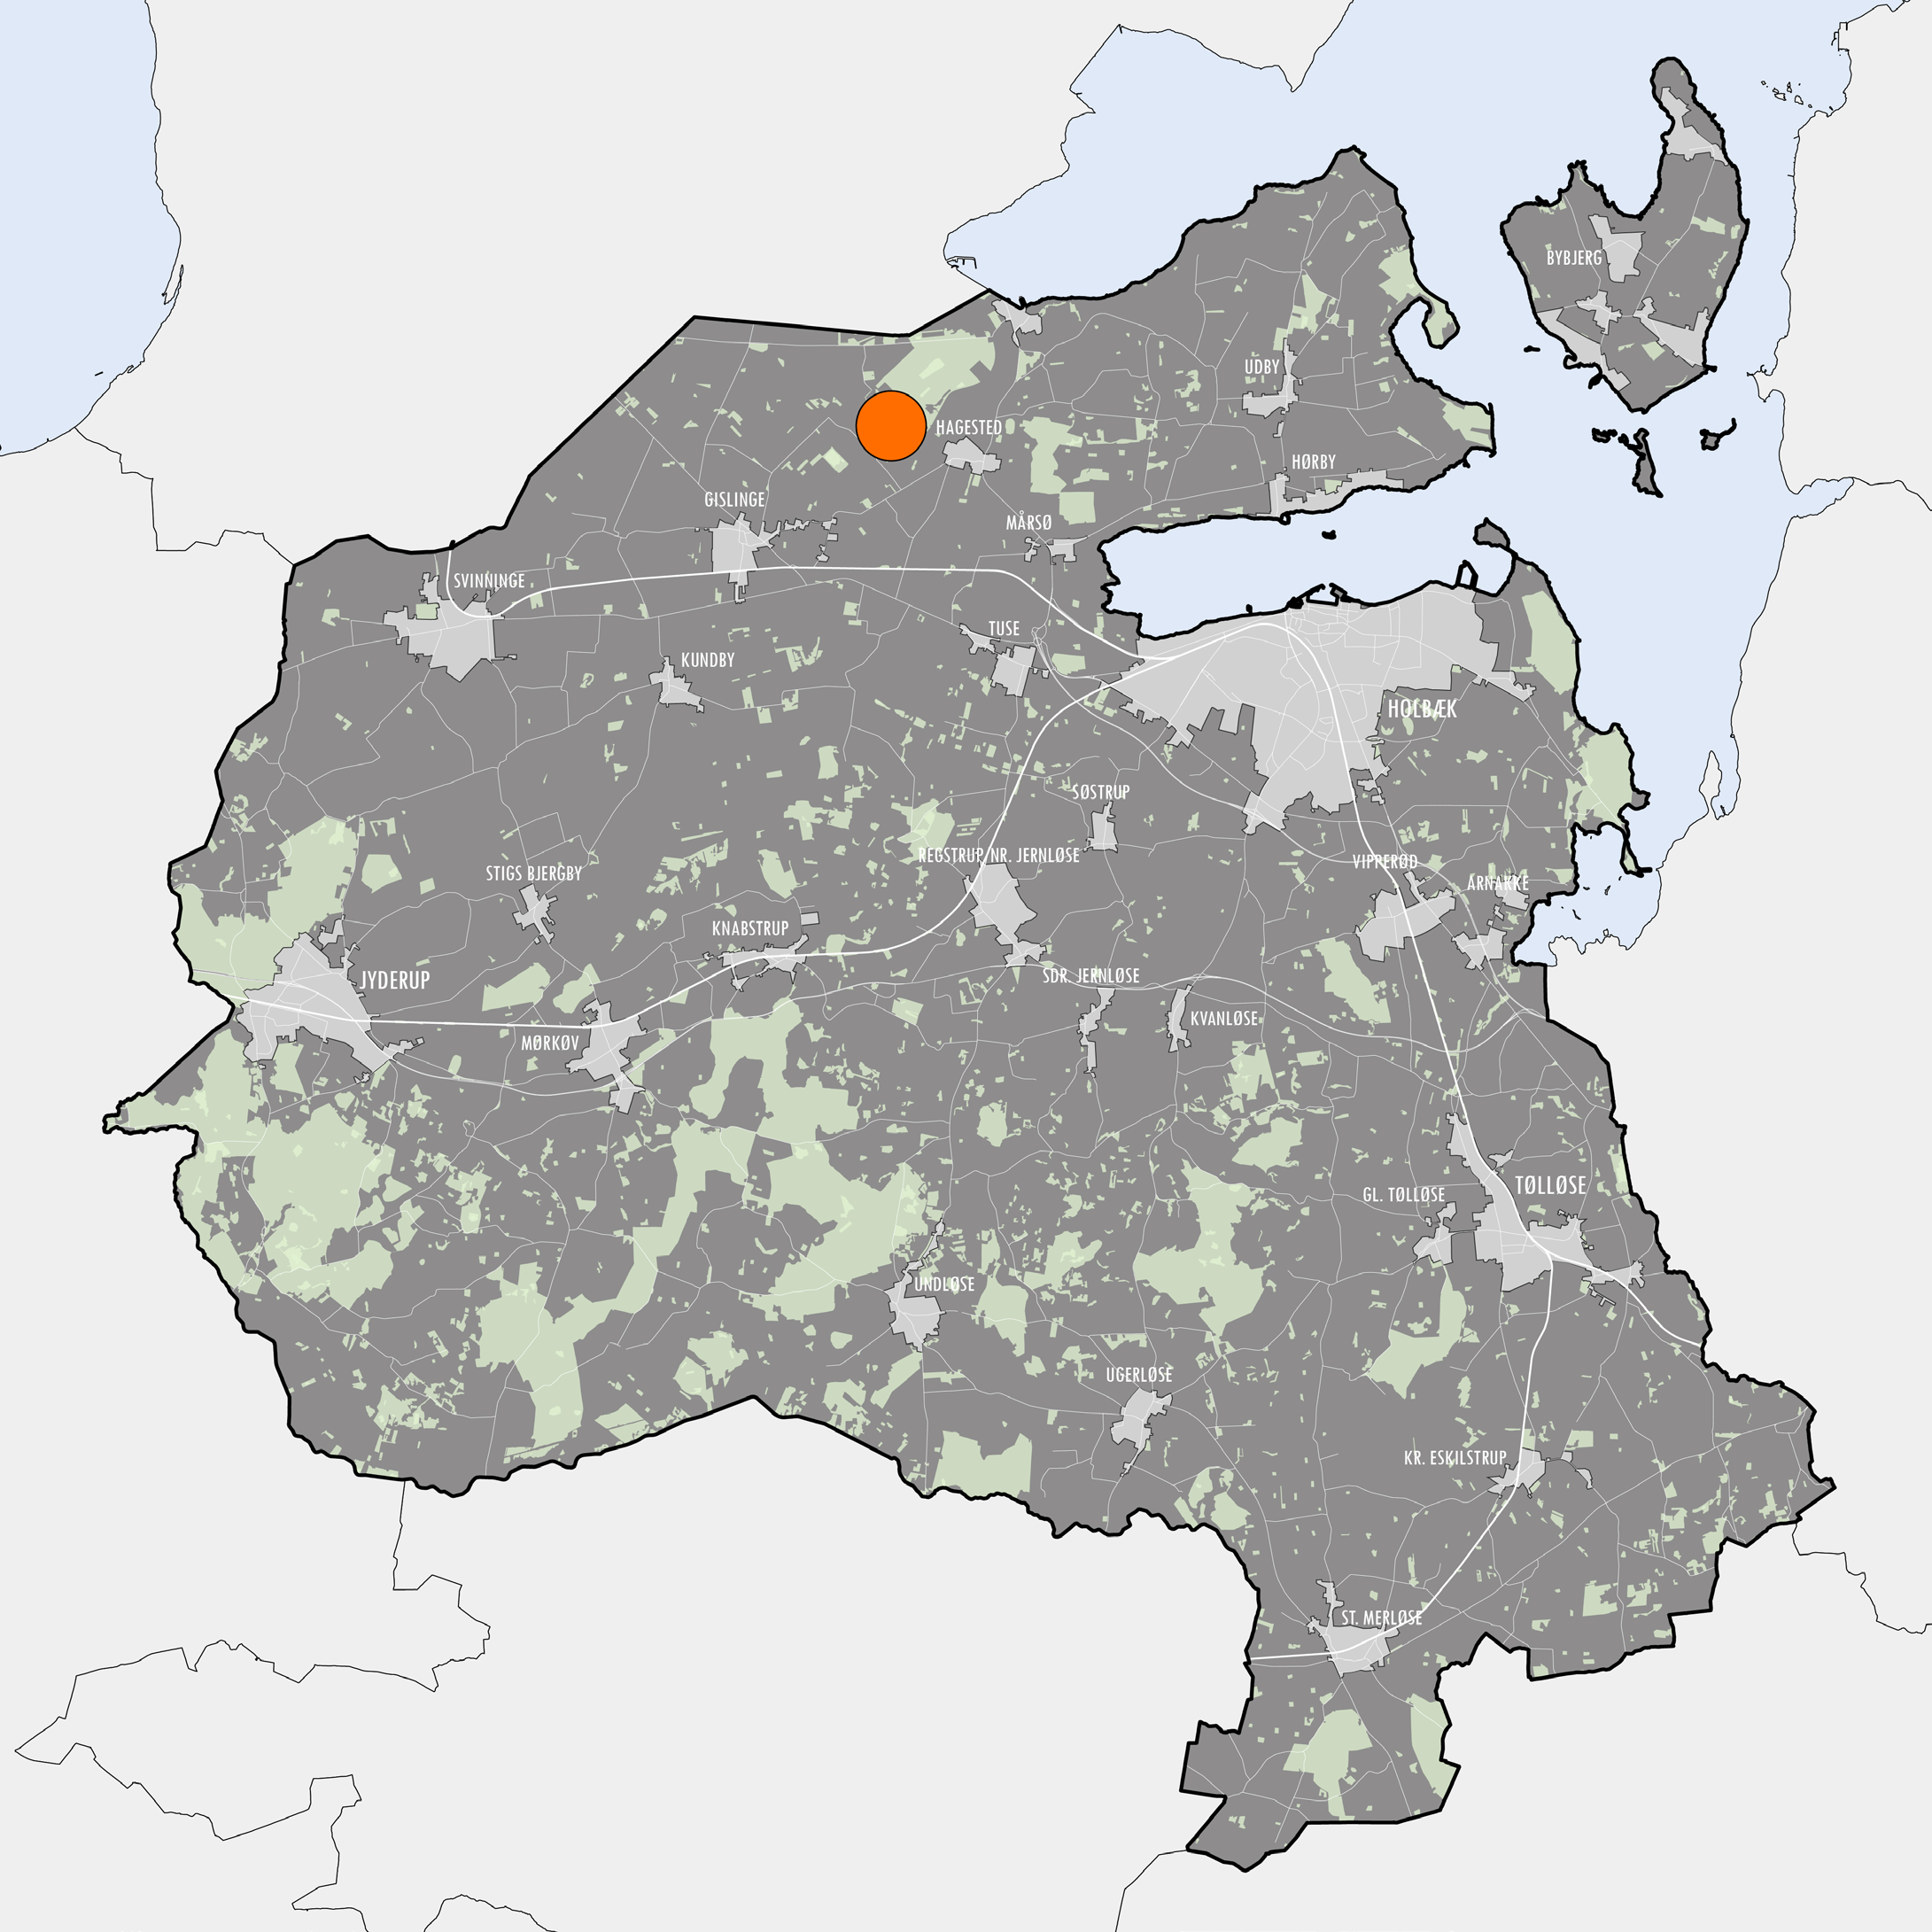 Grundkortet findes her: O:\Teams\Plan\Skabeloner\InDesign_skabeloner\Lokalplanforsider 2015\Grundkort over byer i Holbæk Kommune Holbæk Byrådet har den 13.